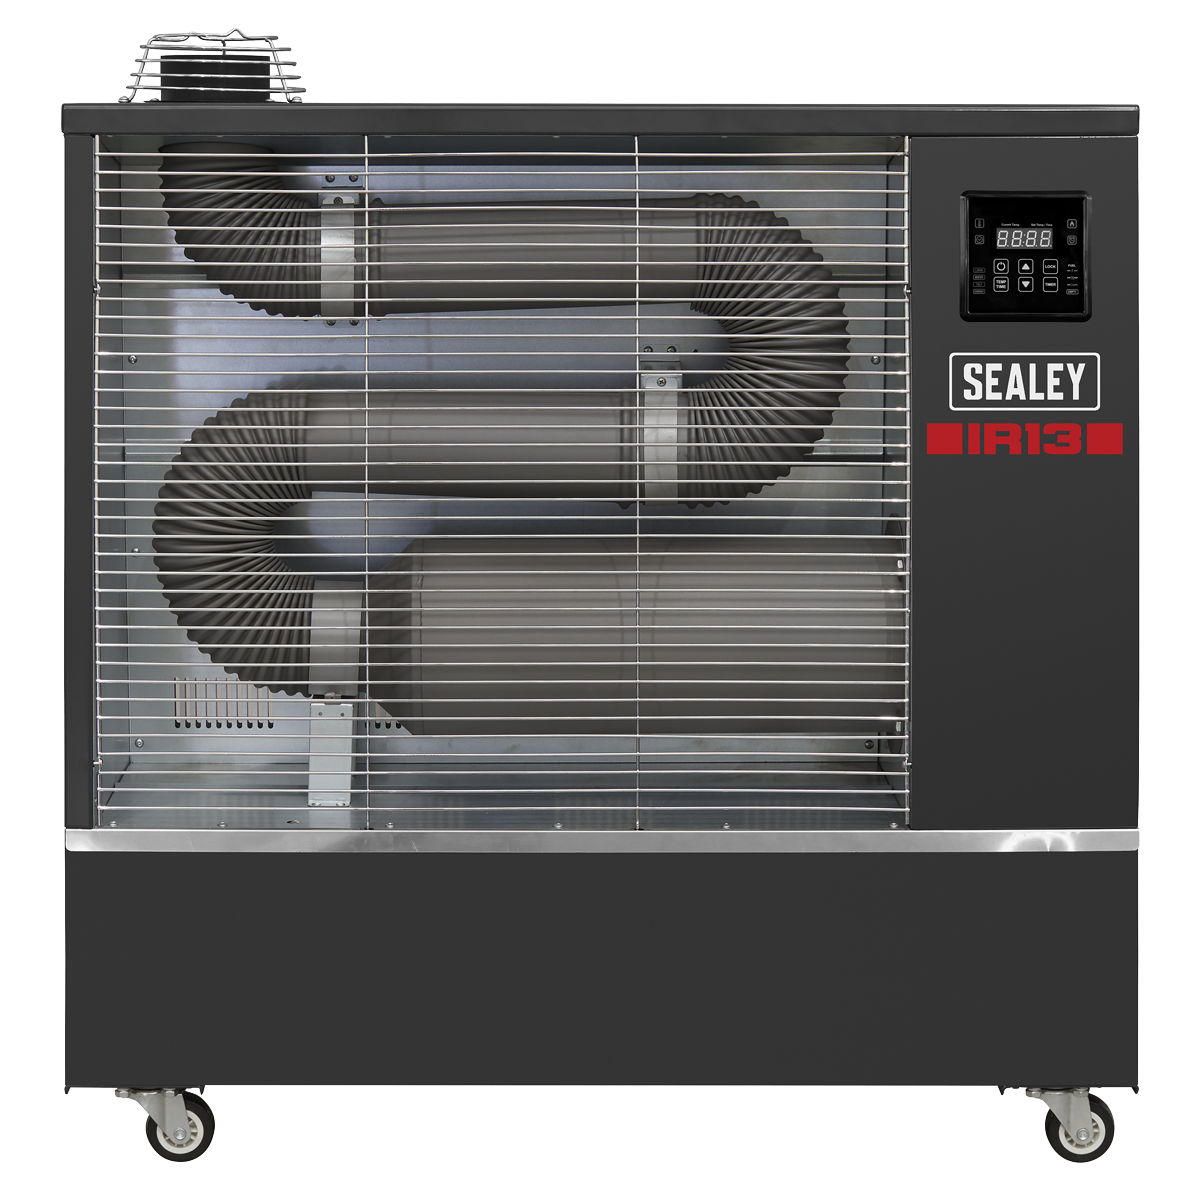 Industrial Infrared Diesel Heater 13kW